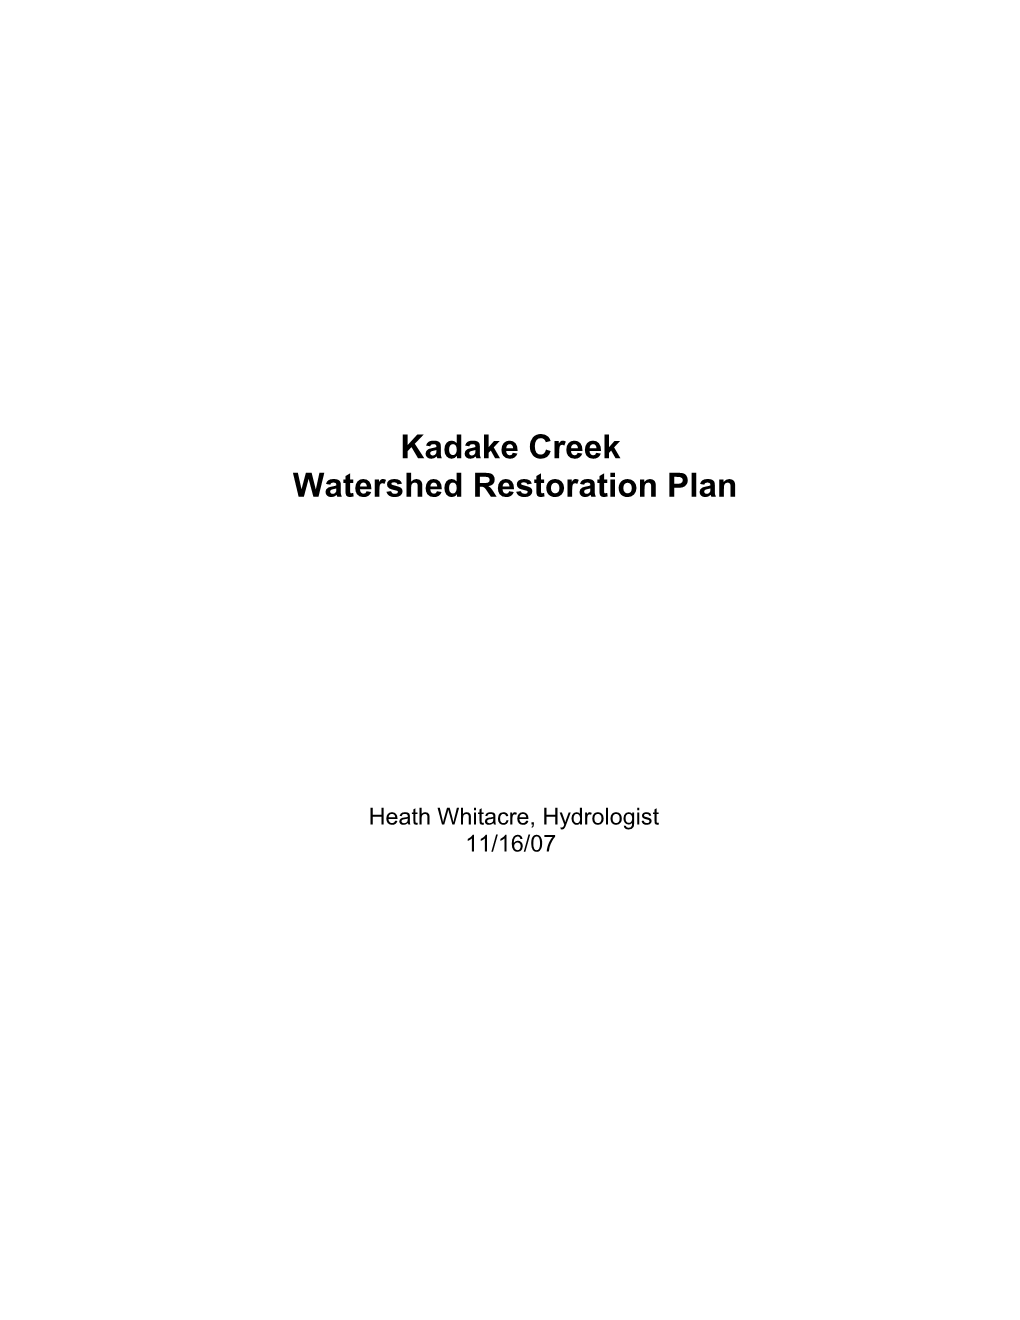 Kadake Creek Watershed Restoration Plan